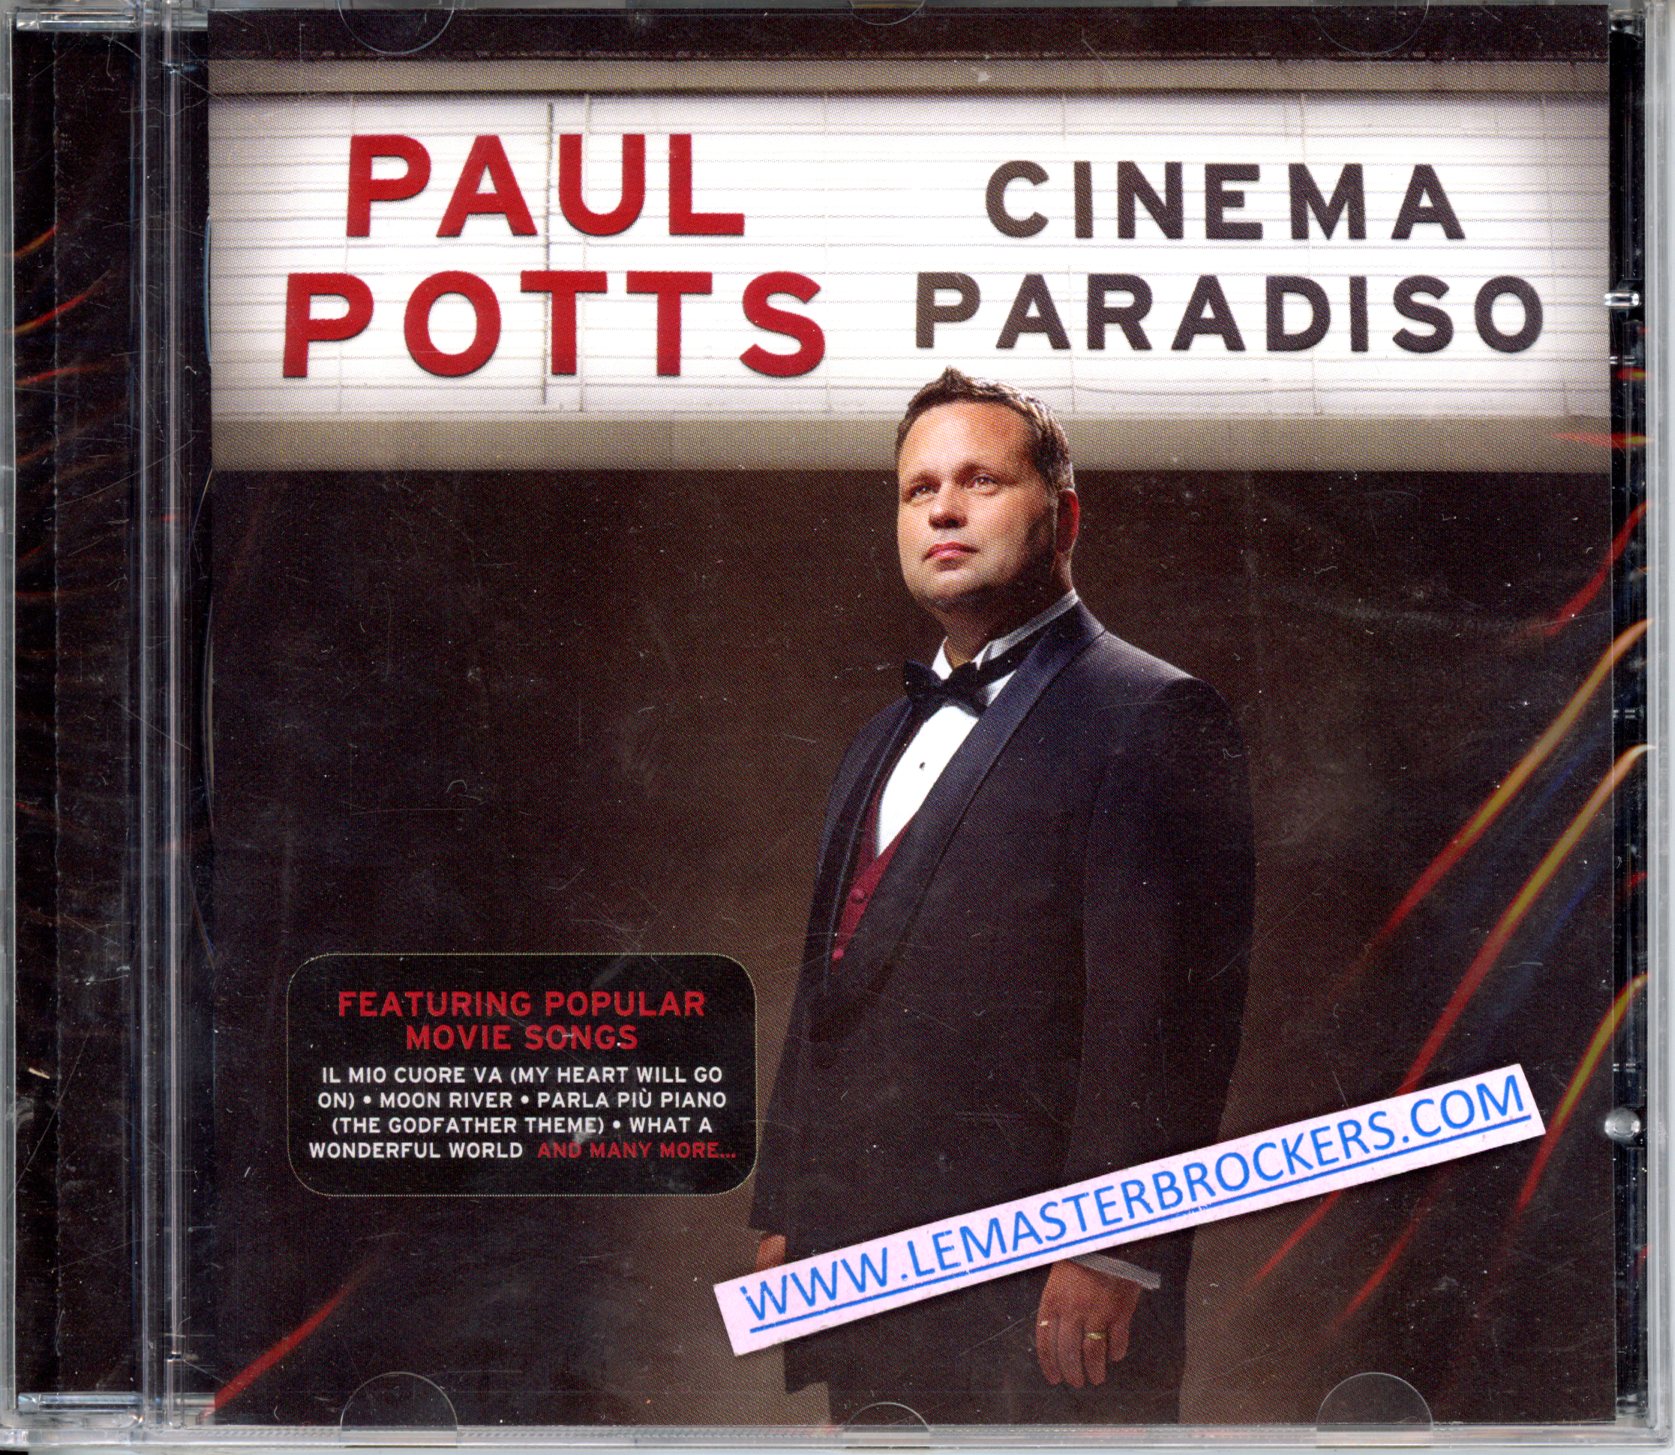 PAUL POTTS CINEMA PARADISO